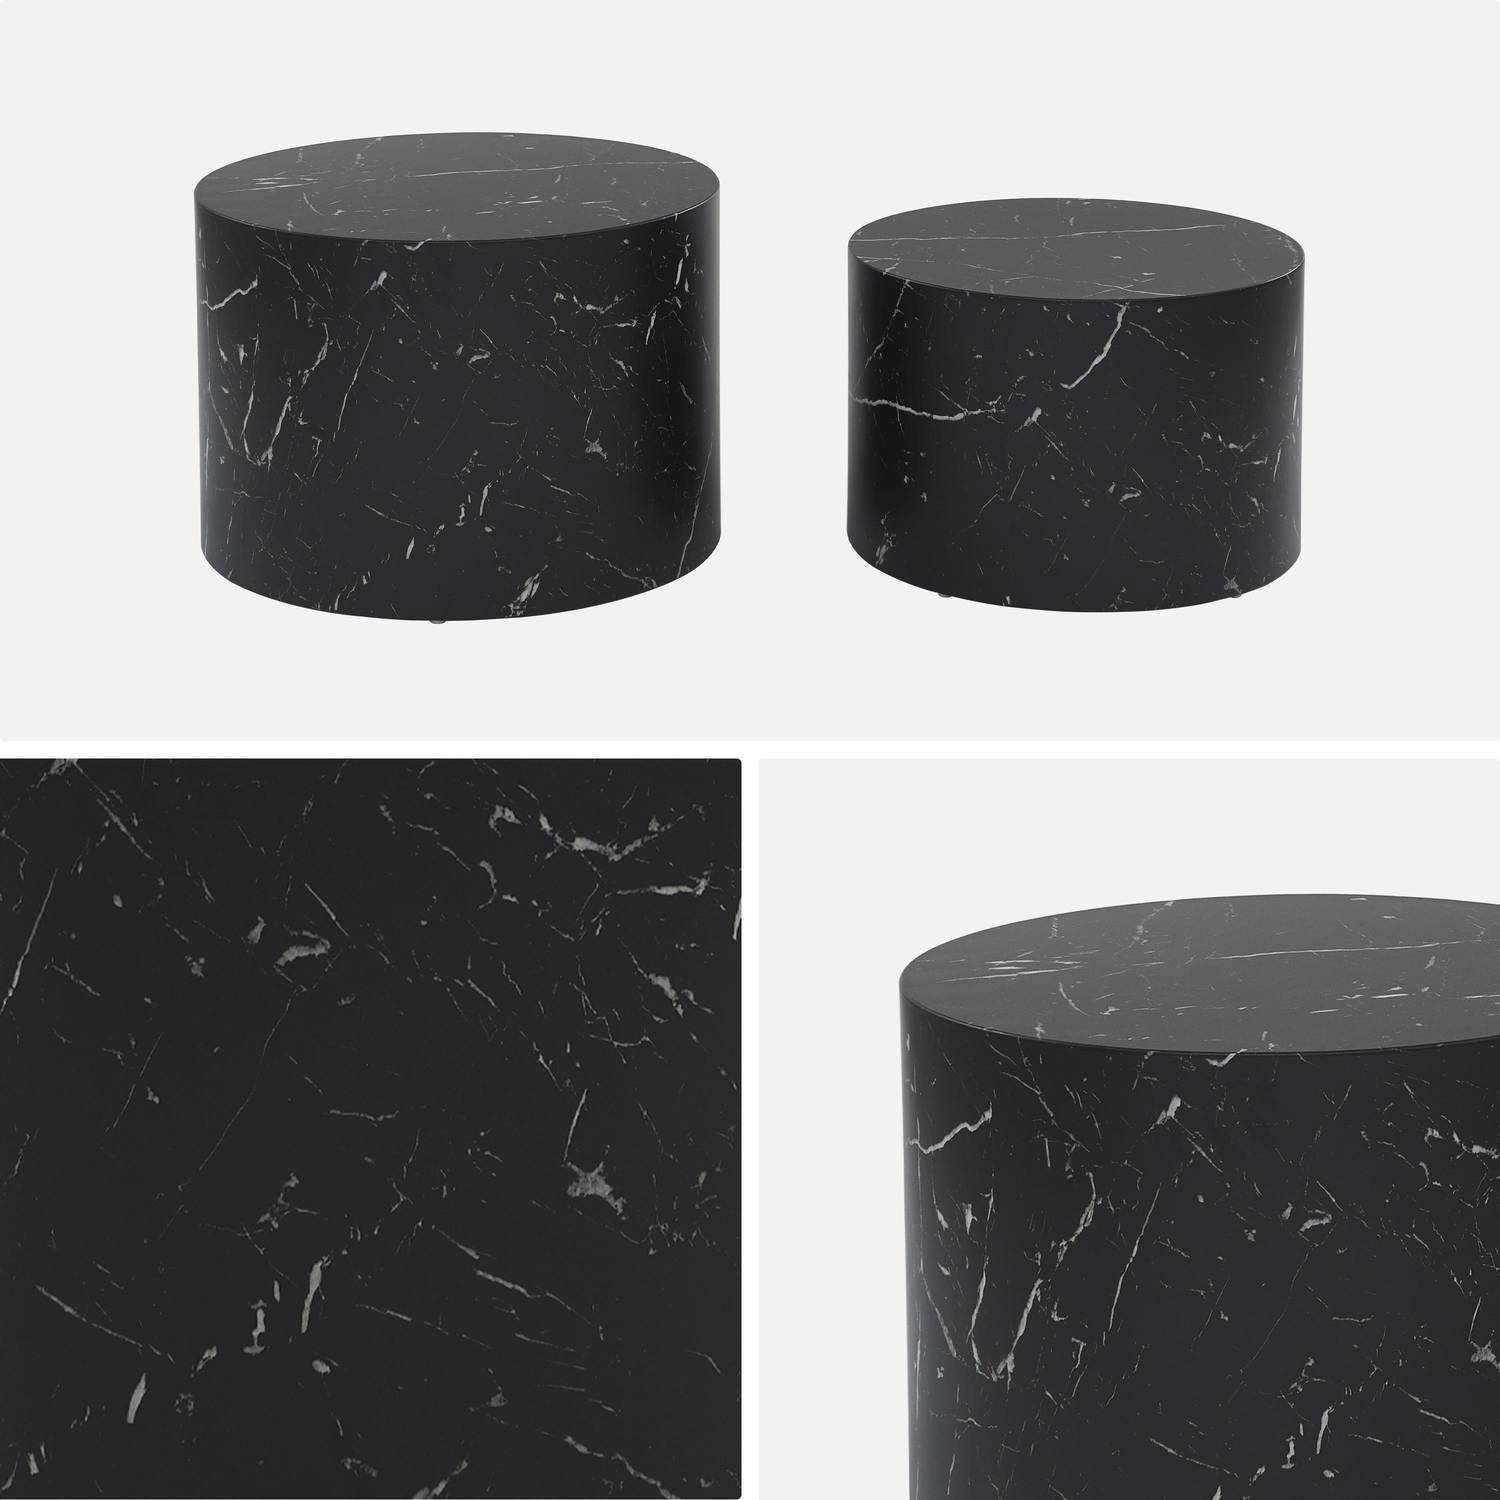 Lote de 2 mesas de centro redondas PAROS, efecto mármol negro, mesas nido Ø58 x H 40cm / Ø50 x H 33cm Photo6